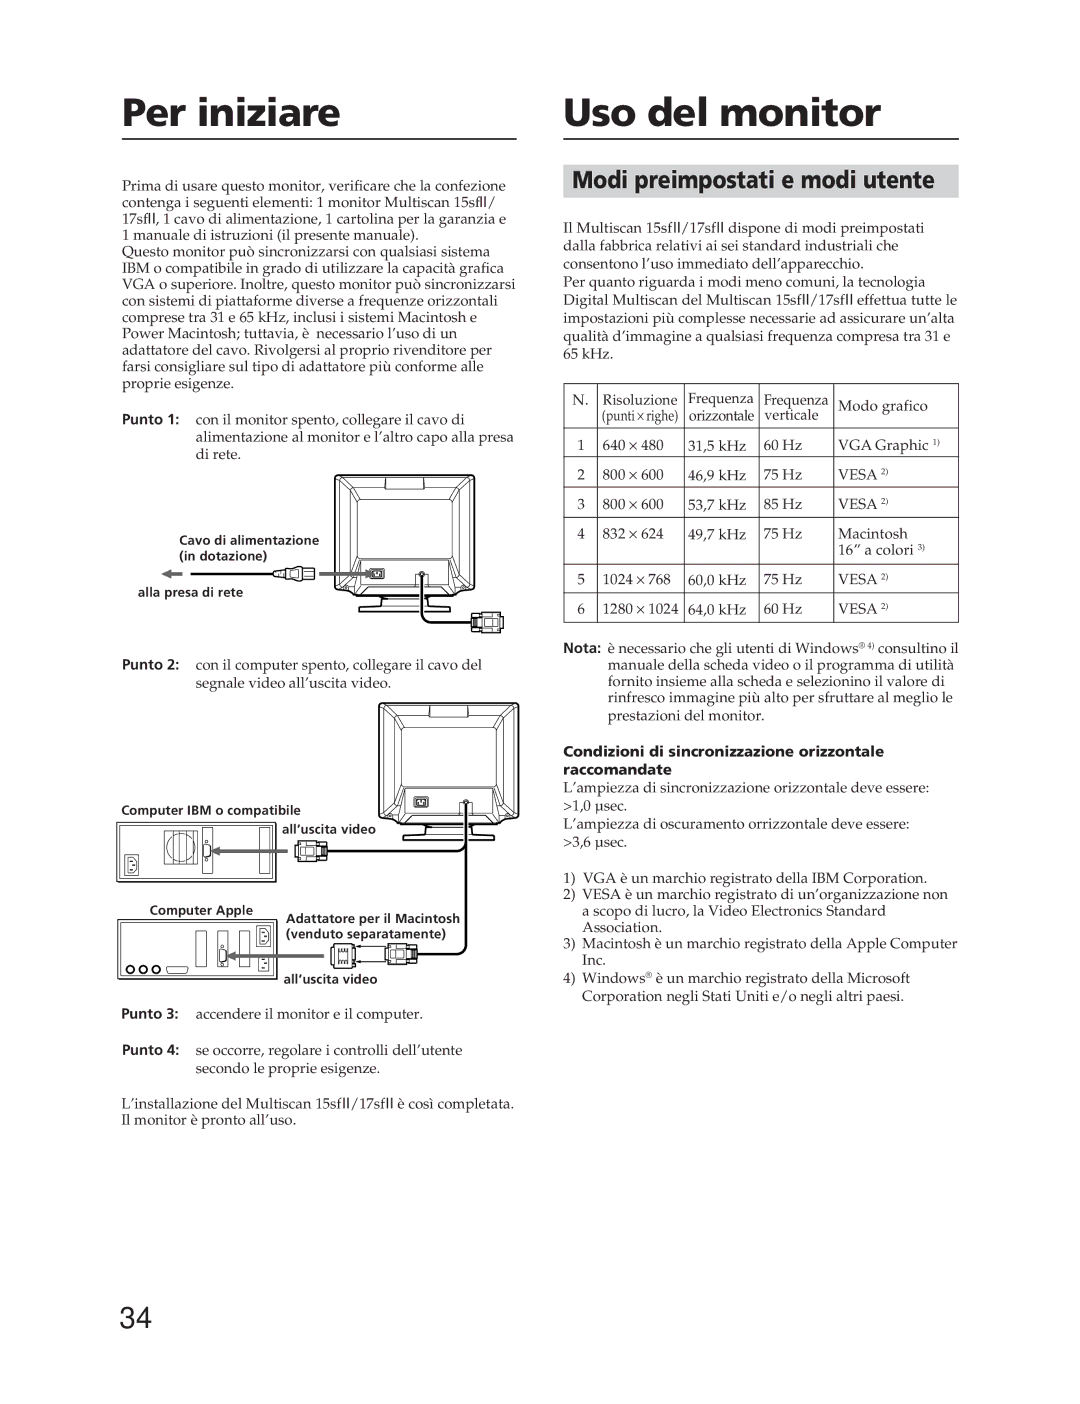 Sony CPD-17SF2T Per iniziare, Modi preimpostati e modi utente, Condizioni di sincronizzazione orizzontale raccomandate 